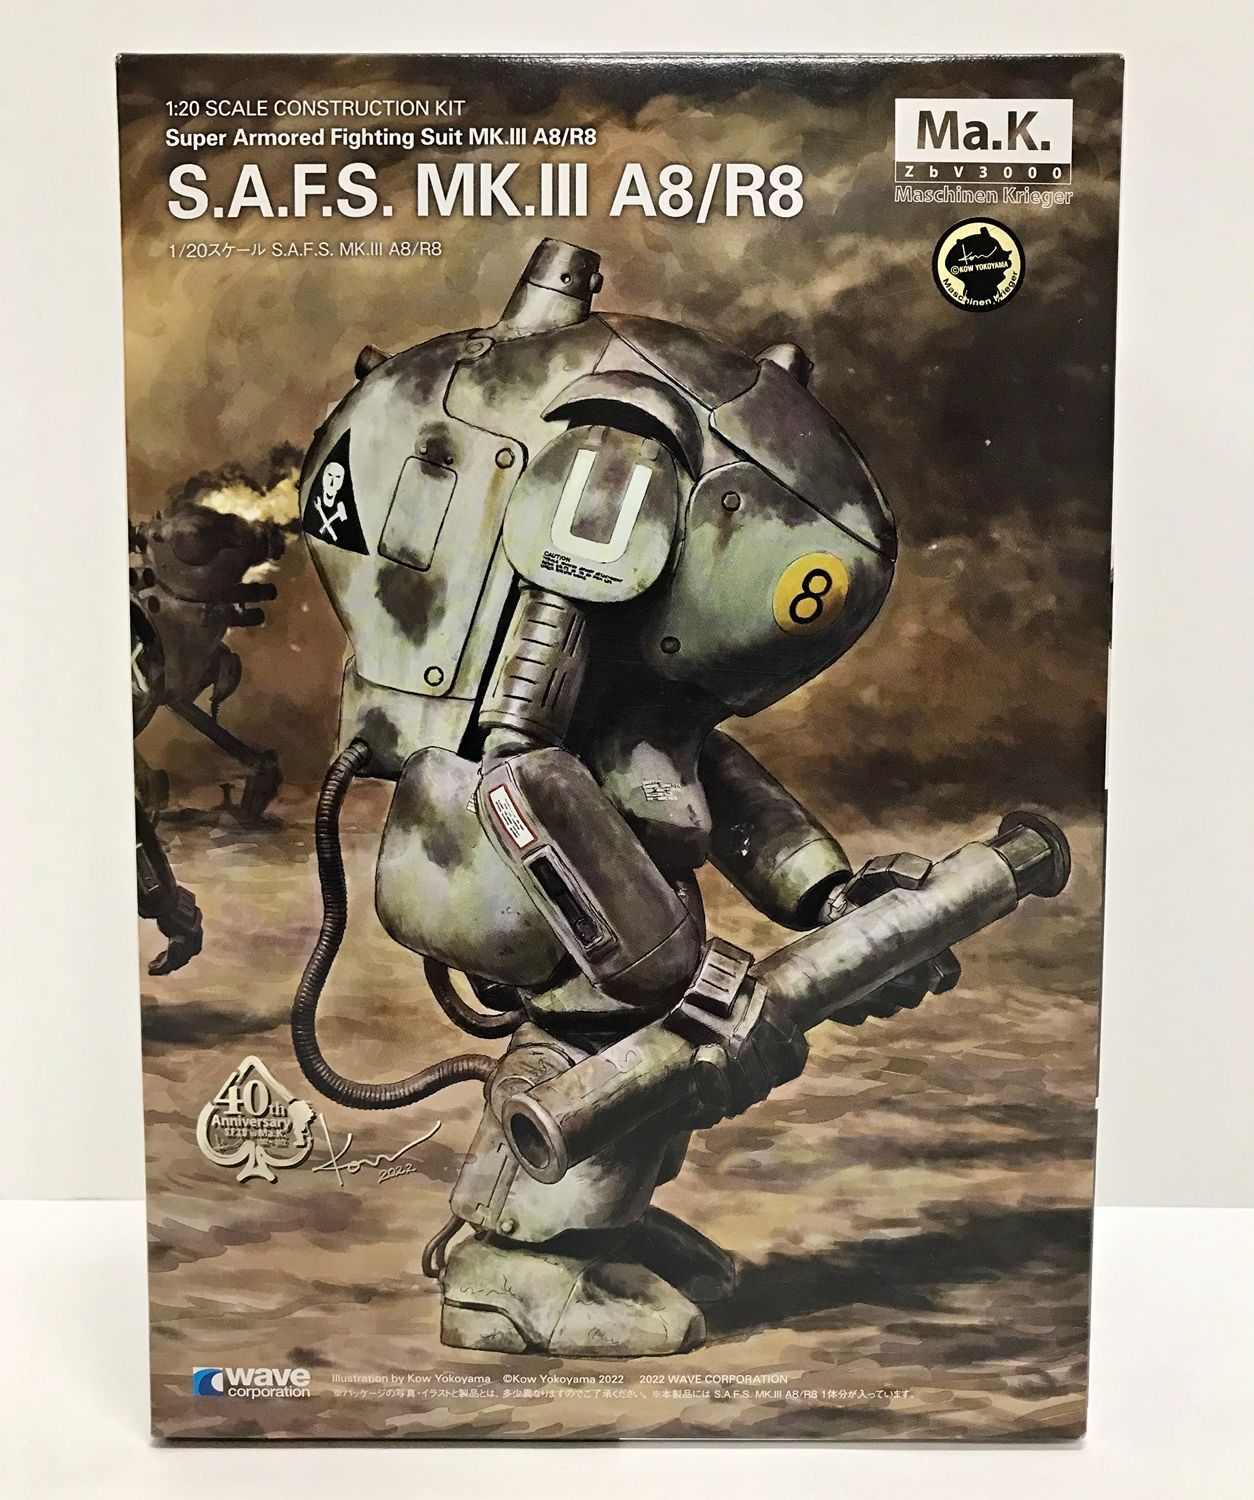 34.【未組立】1/20 S.A.F.S. Mk.III A8/R8 Ma.K. マシーネンクリーガー 